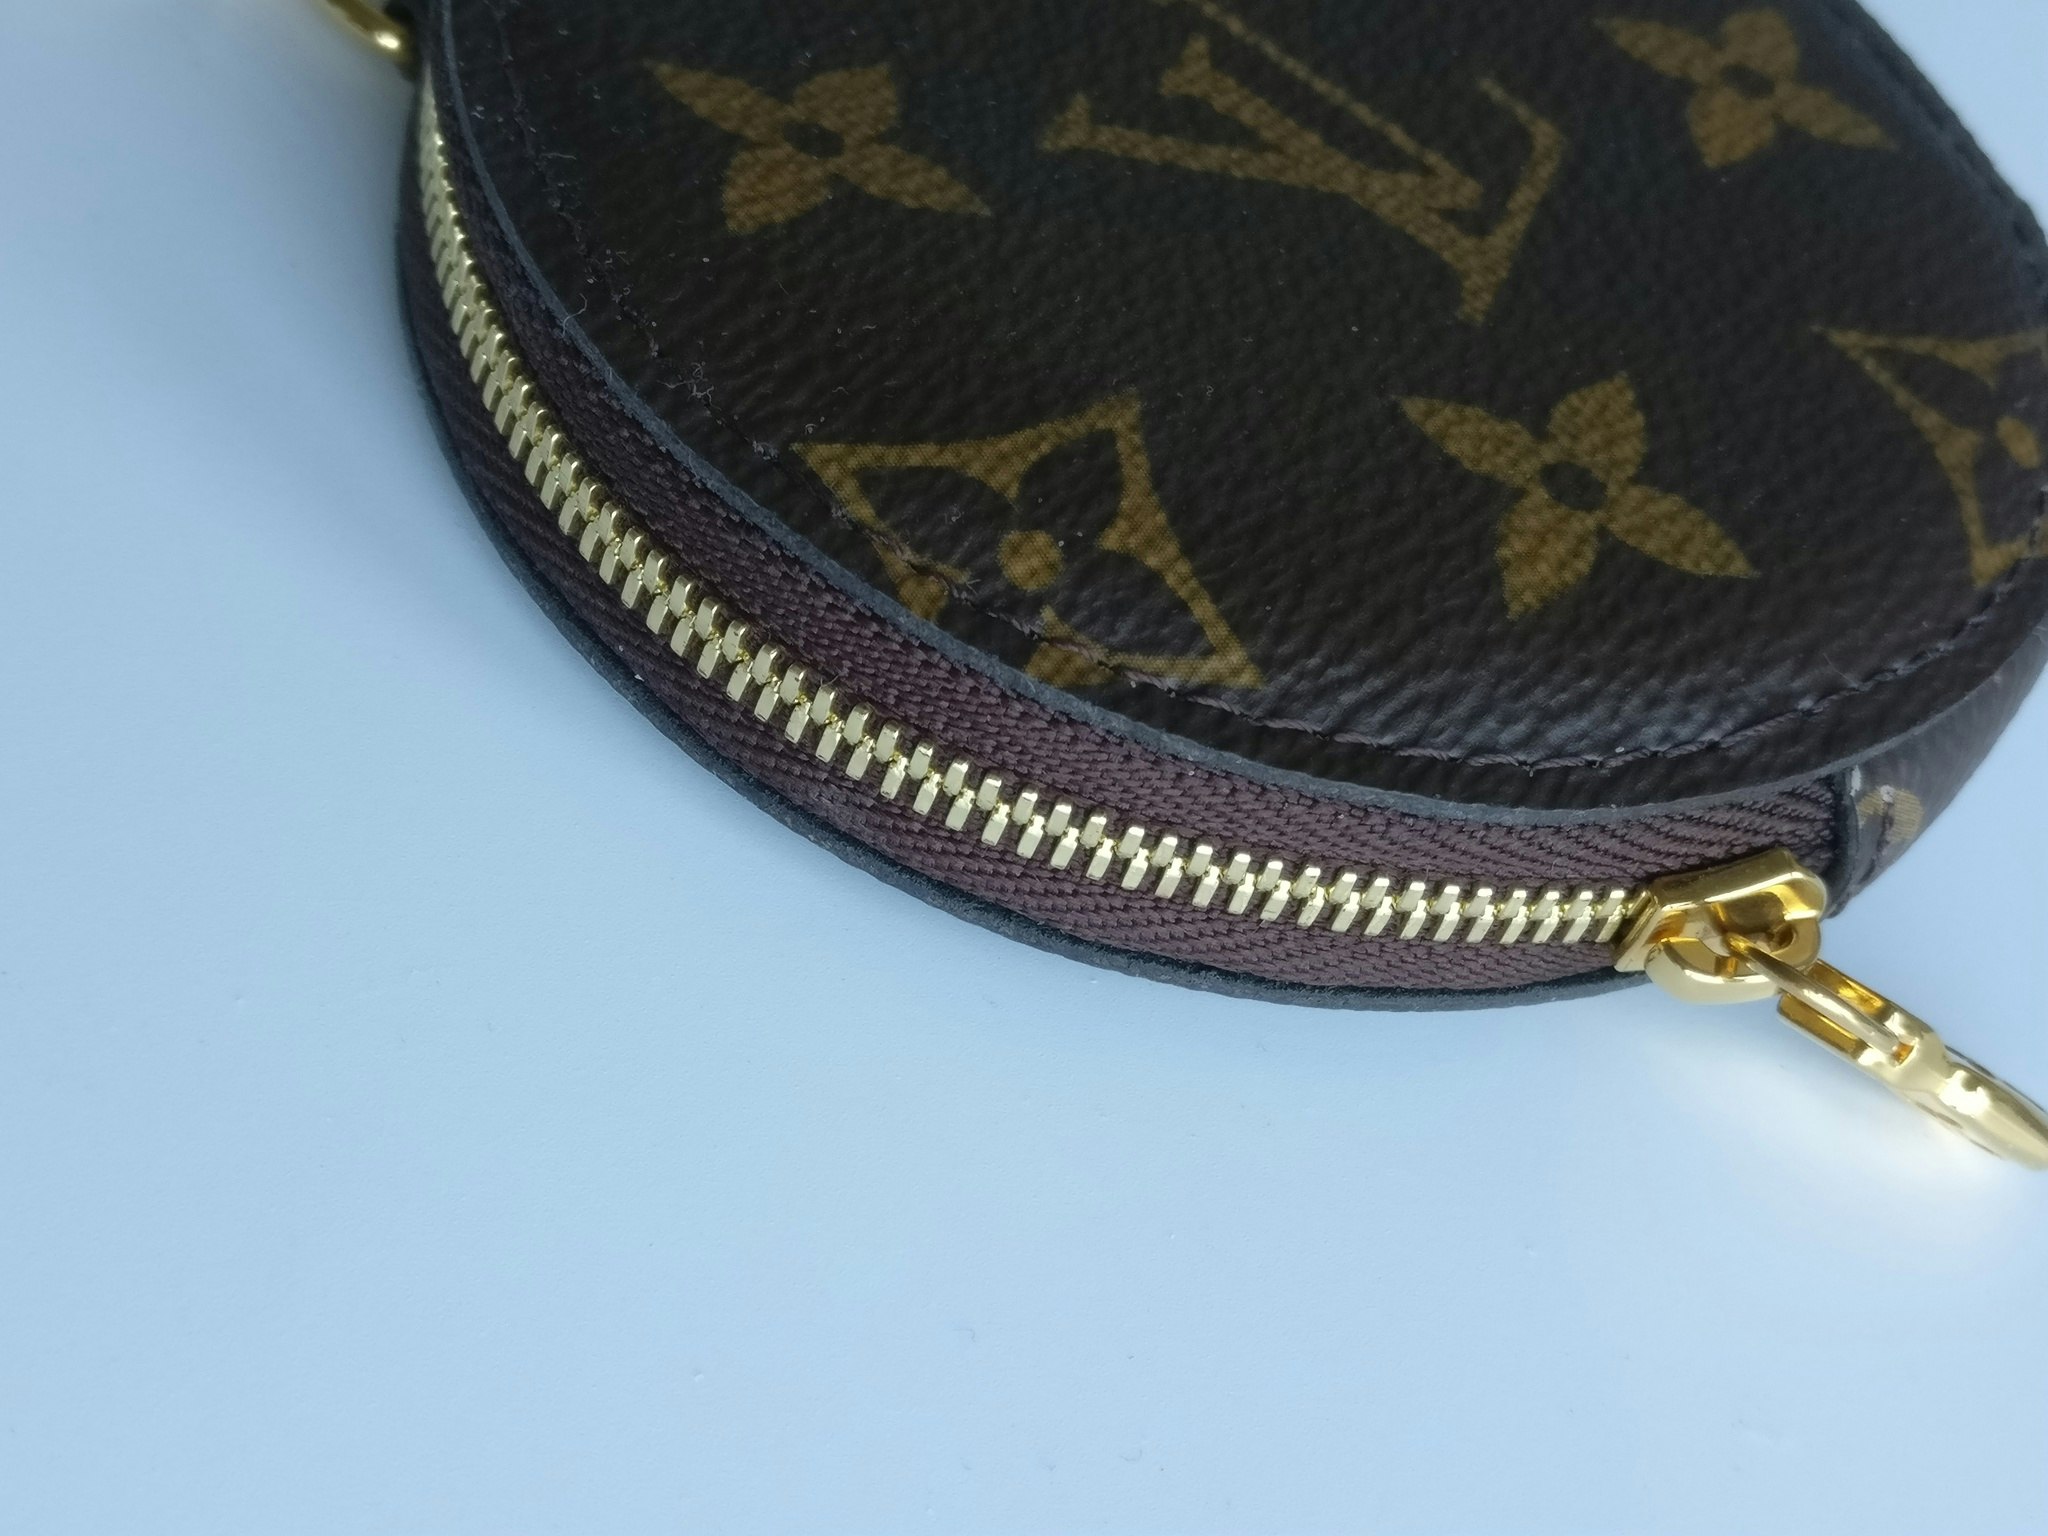 How to Spot a fake Louis Vuitton Multicolore Pochette Accessoires